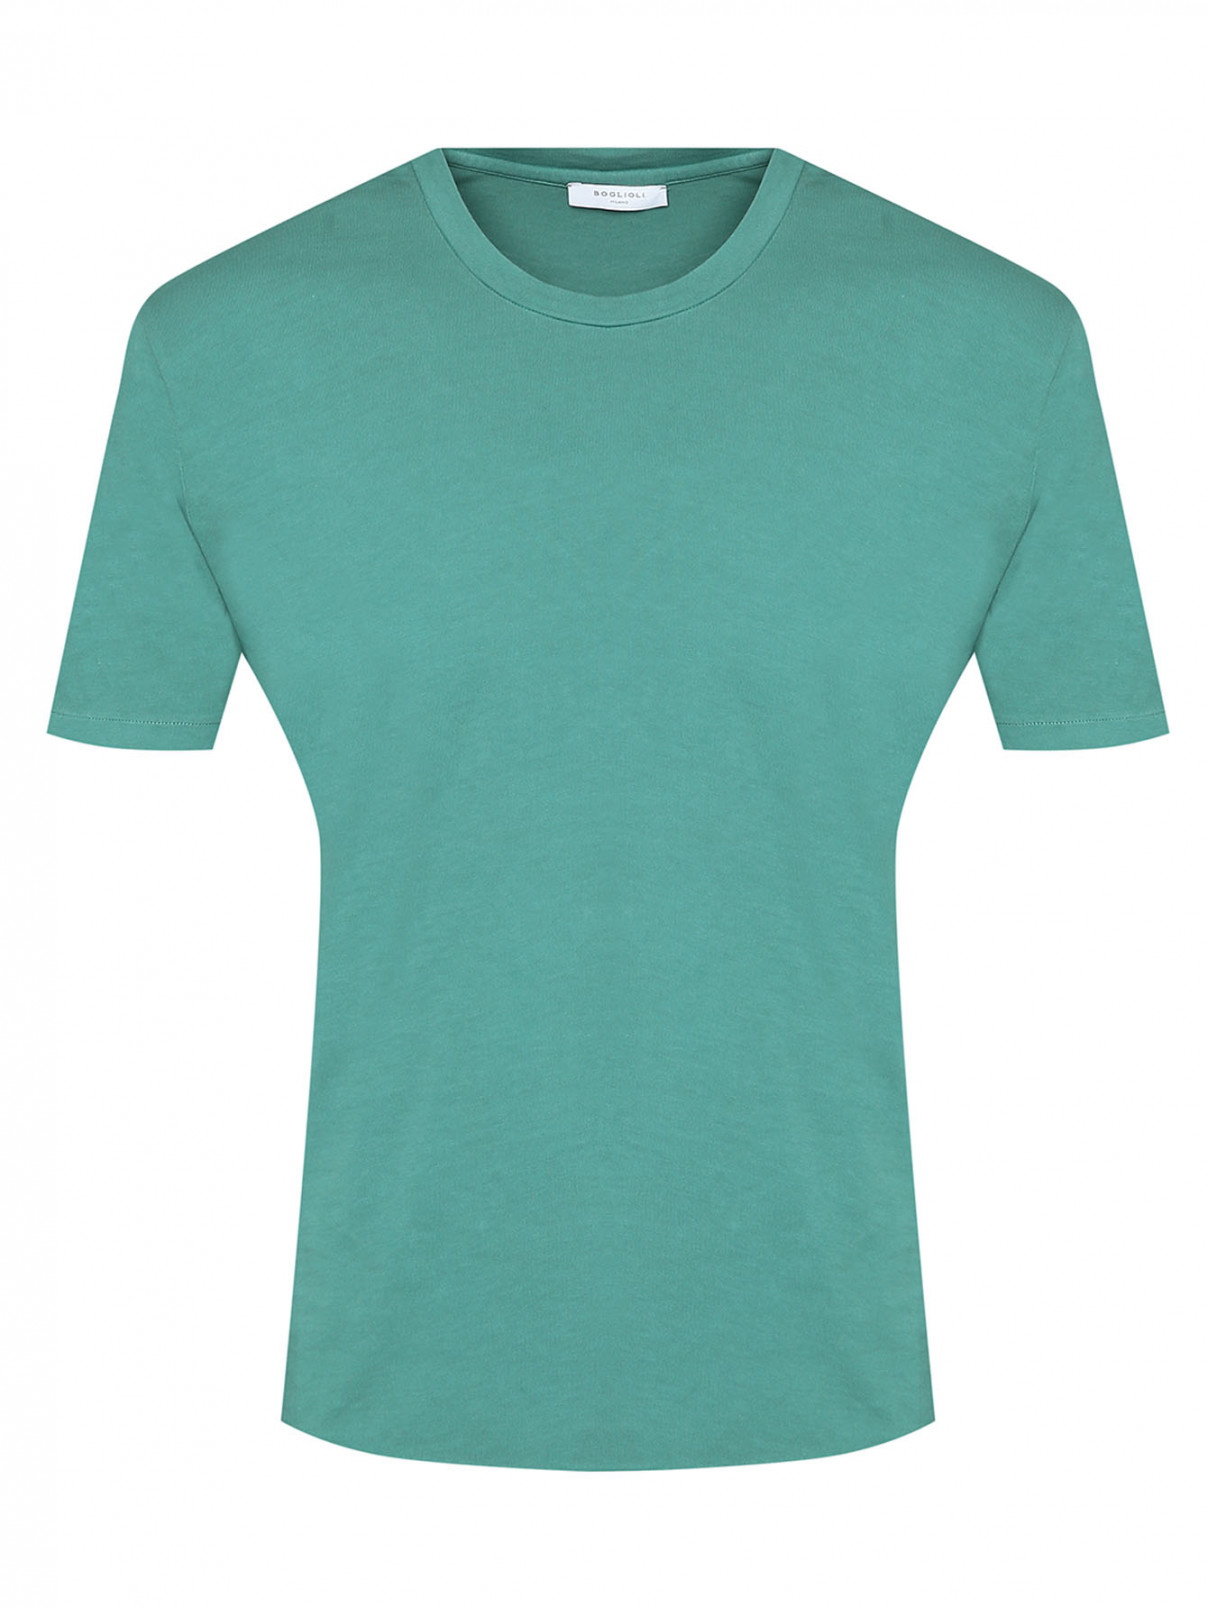 Однотонная футболка из хлопка Boglioli  –  Общий вид  – Цвет:  Зеленый